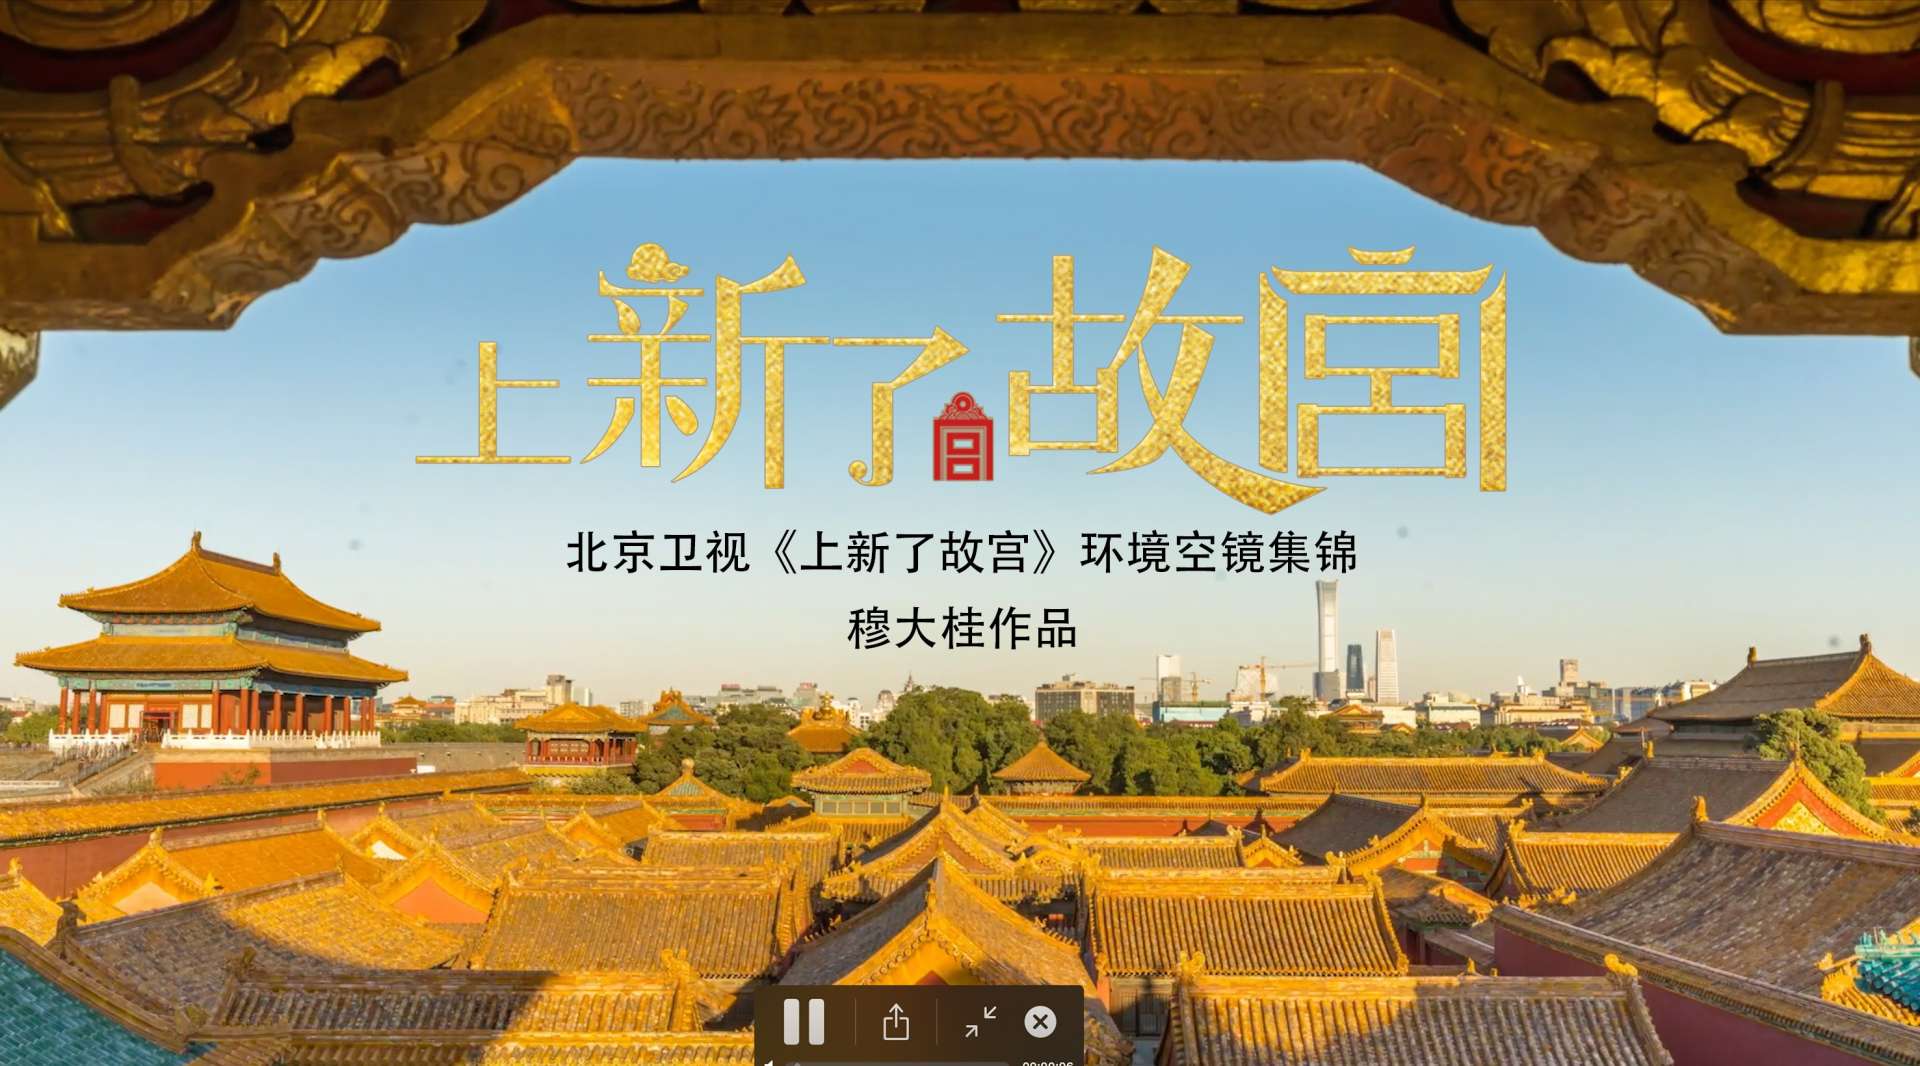 北京卫视《上新了.故宫》第一季环境空镜集锦